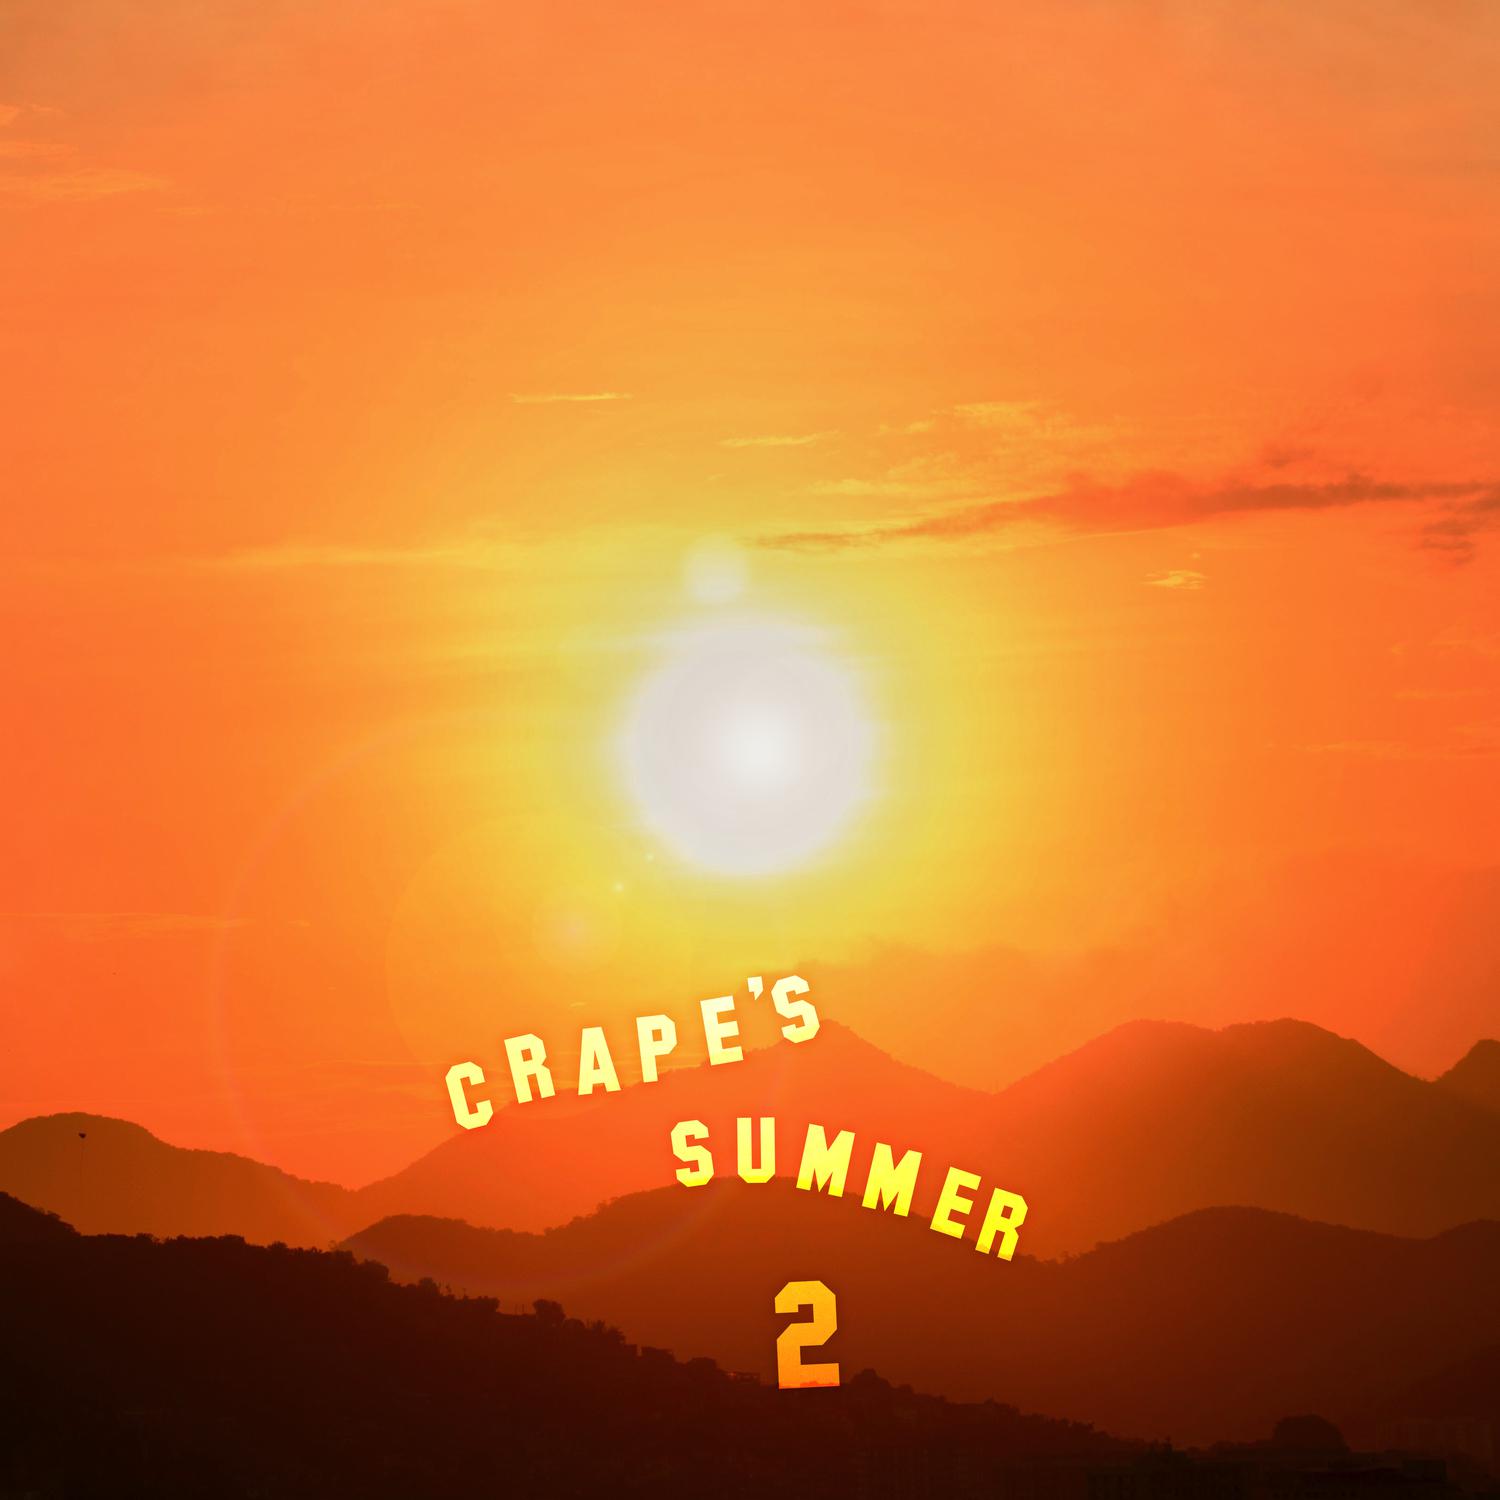 Crape's Summer 2